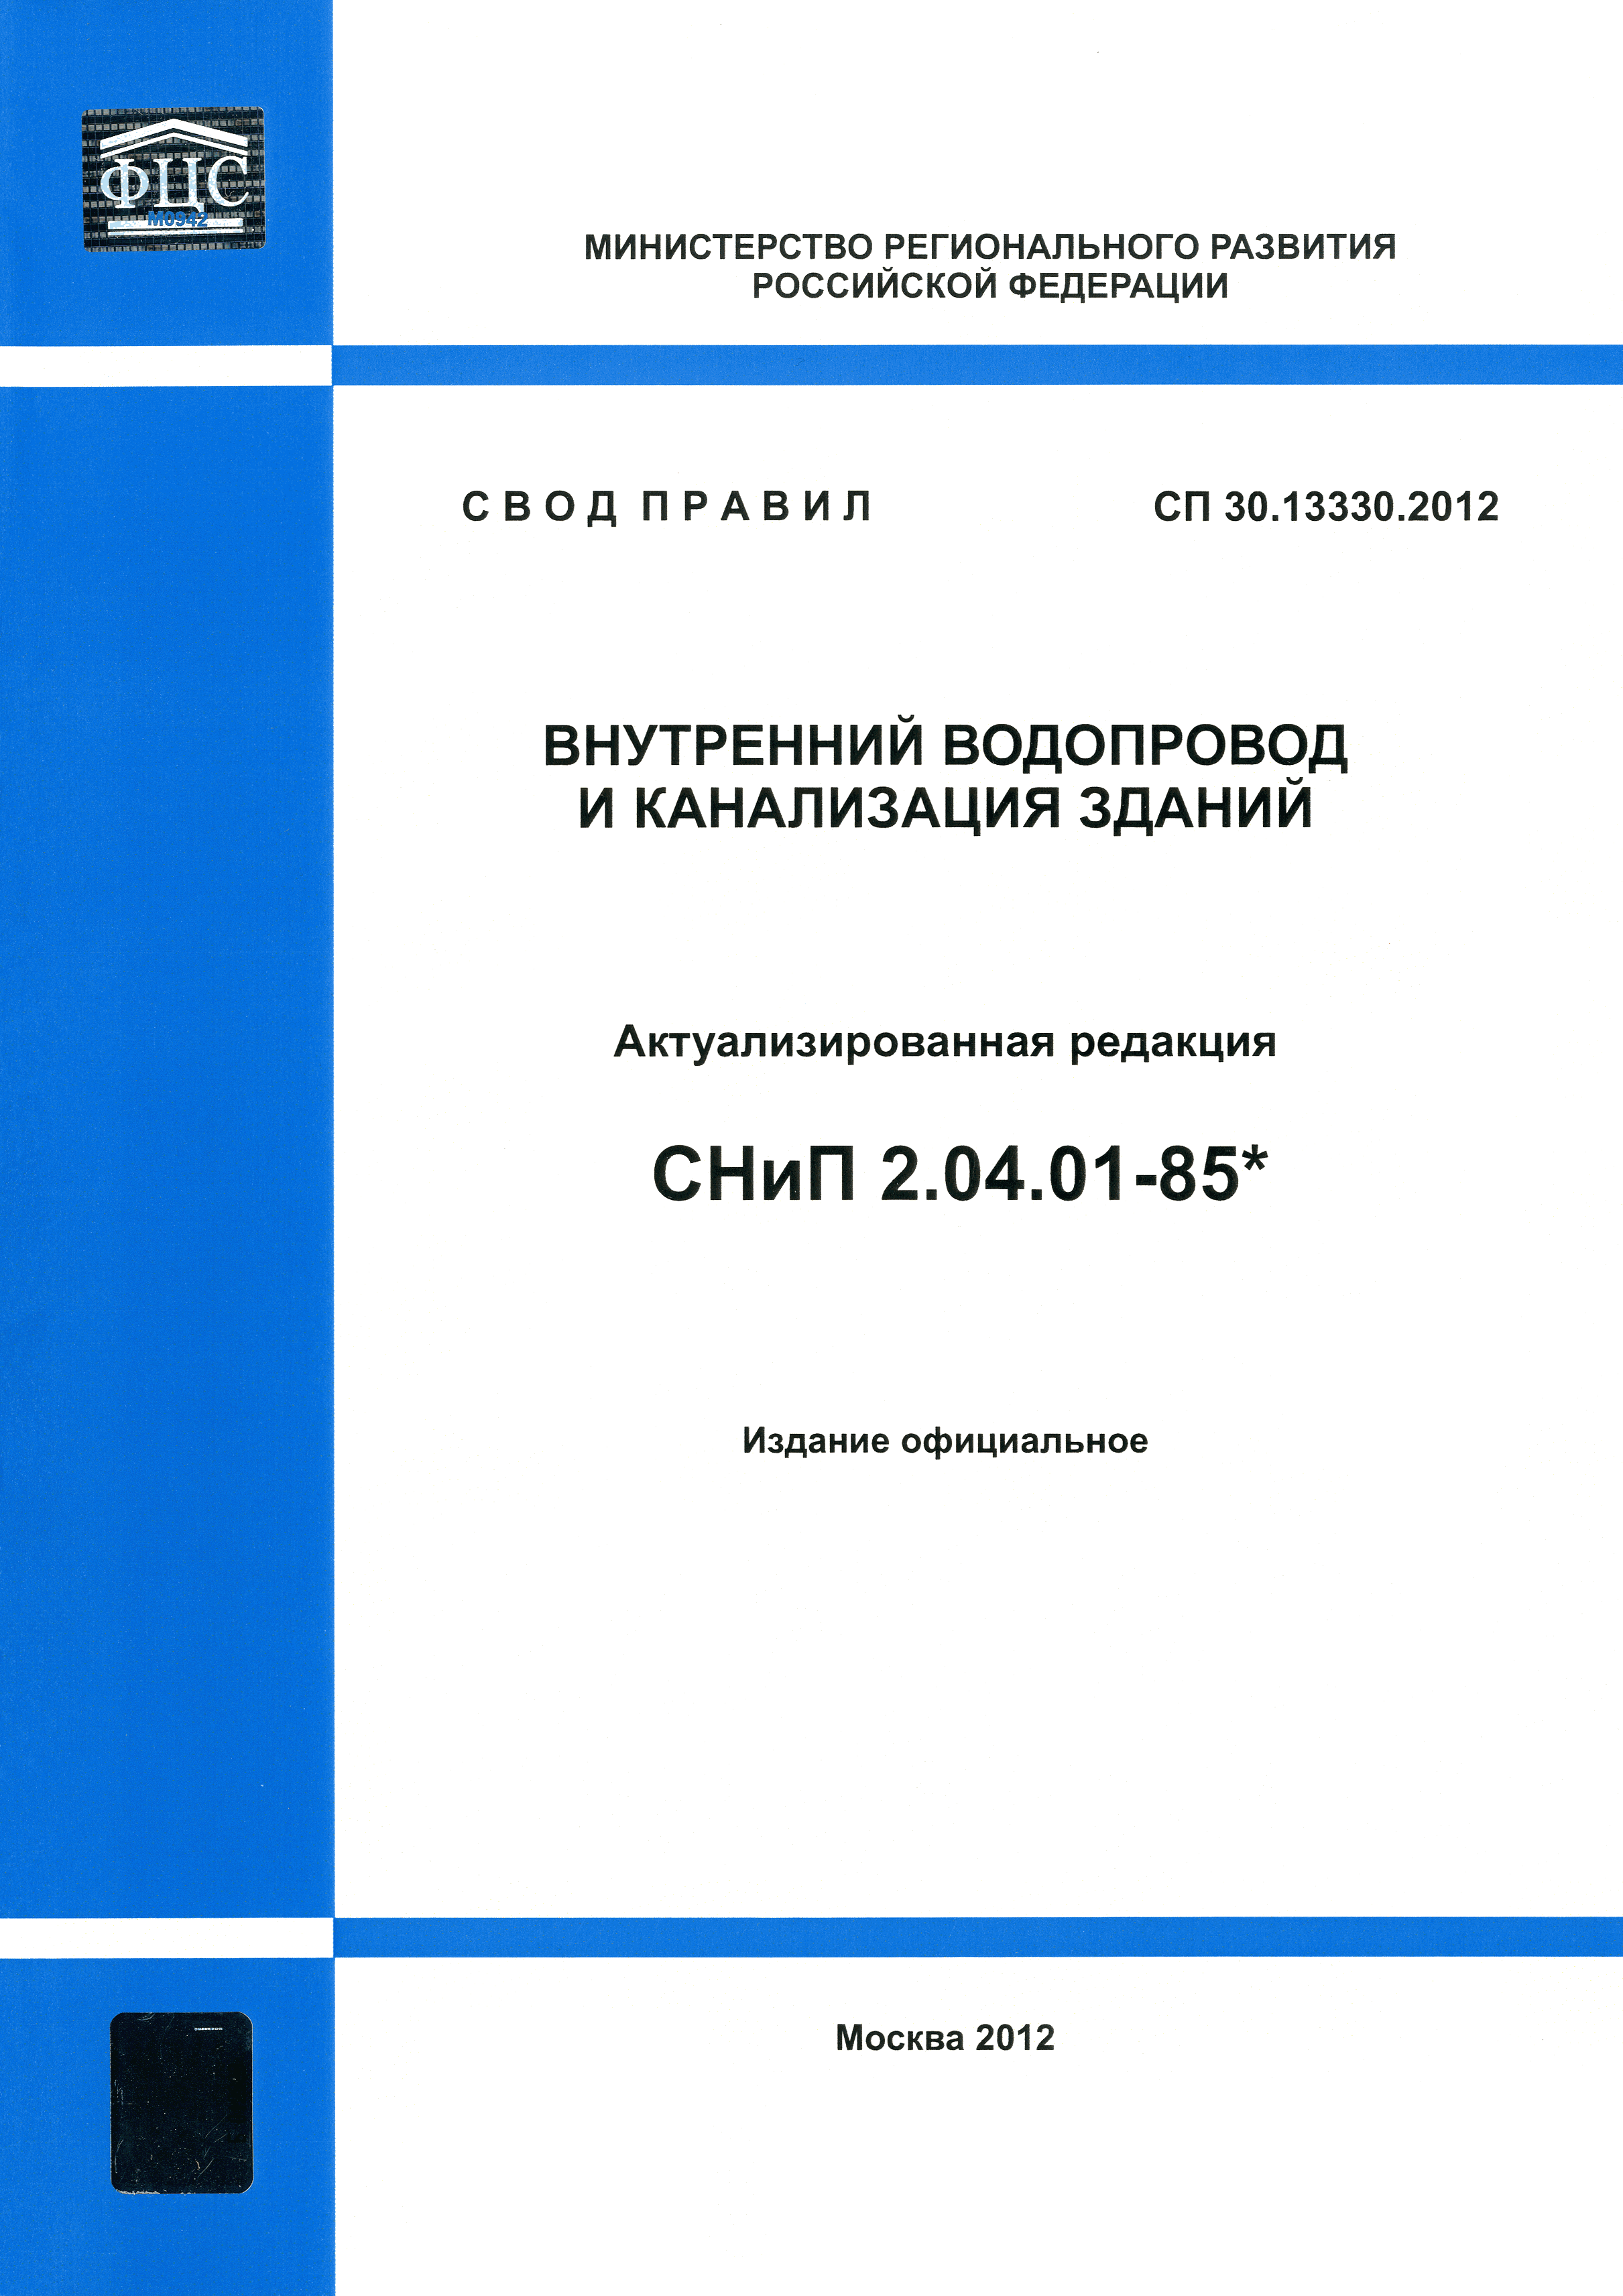 СП 30.13330.2012